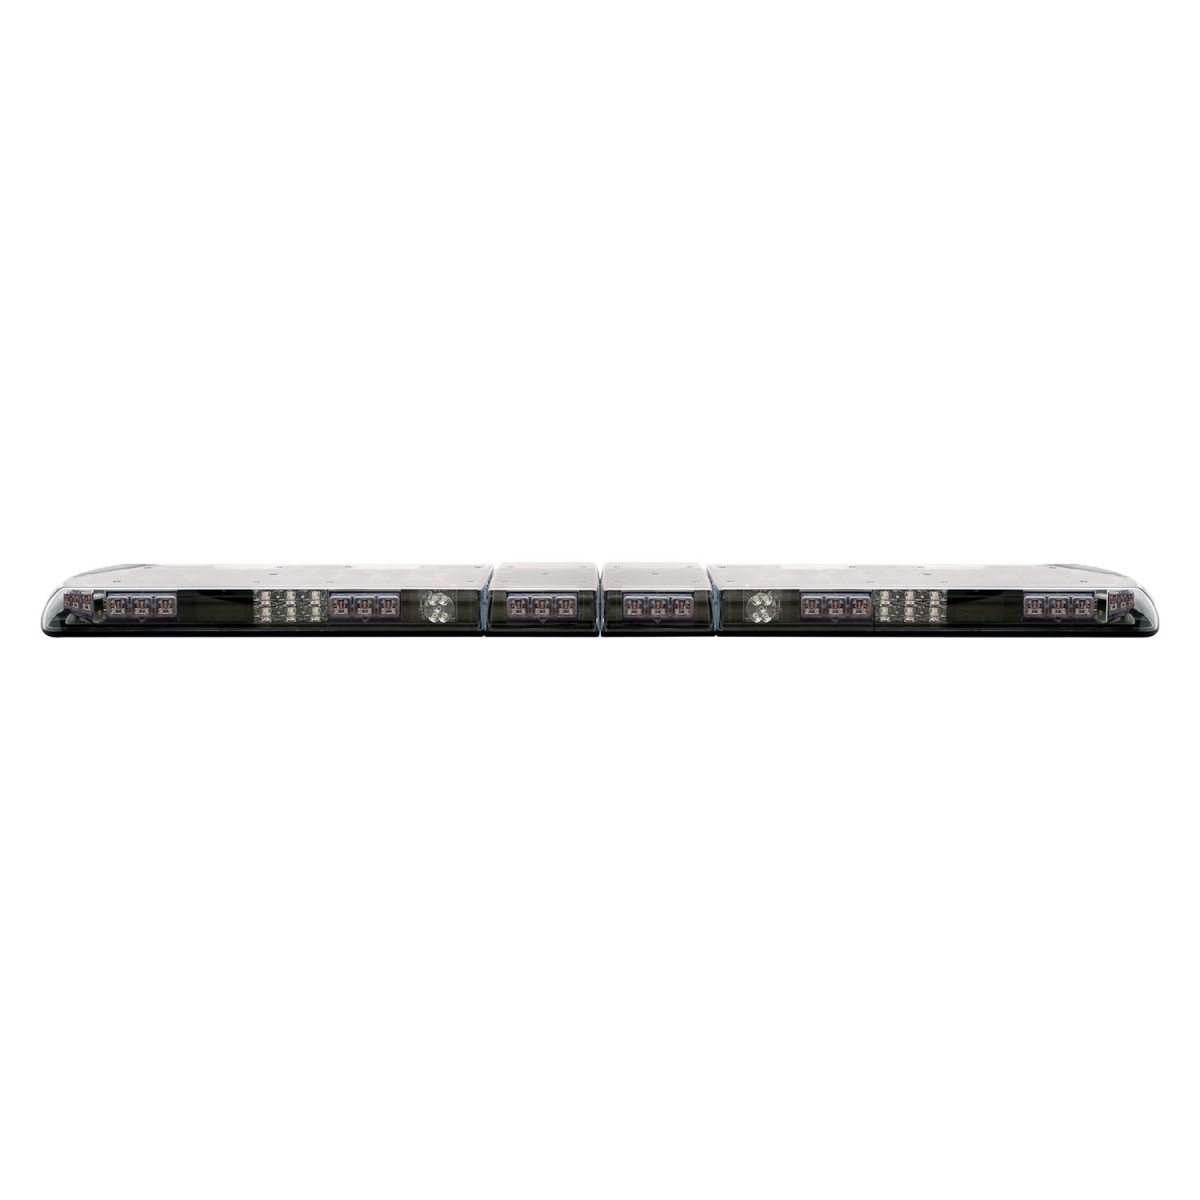 Ecc12-20003-e 60 In. Vantage 12 Series Amber Full Size Emergency Led Light Bar